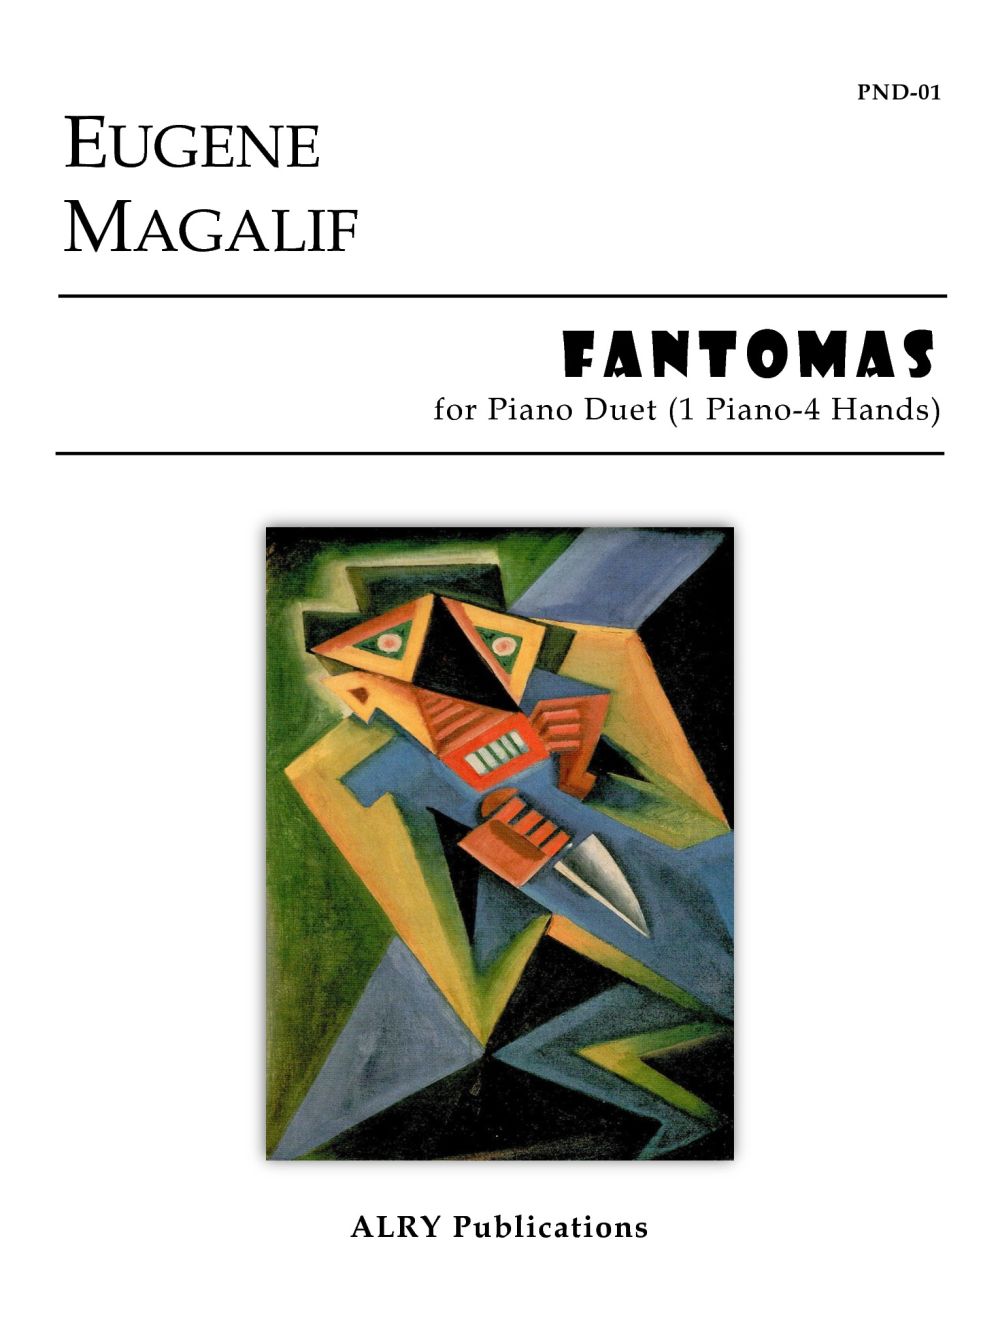 Fantomas (MAGALIF EUGENE)